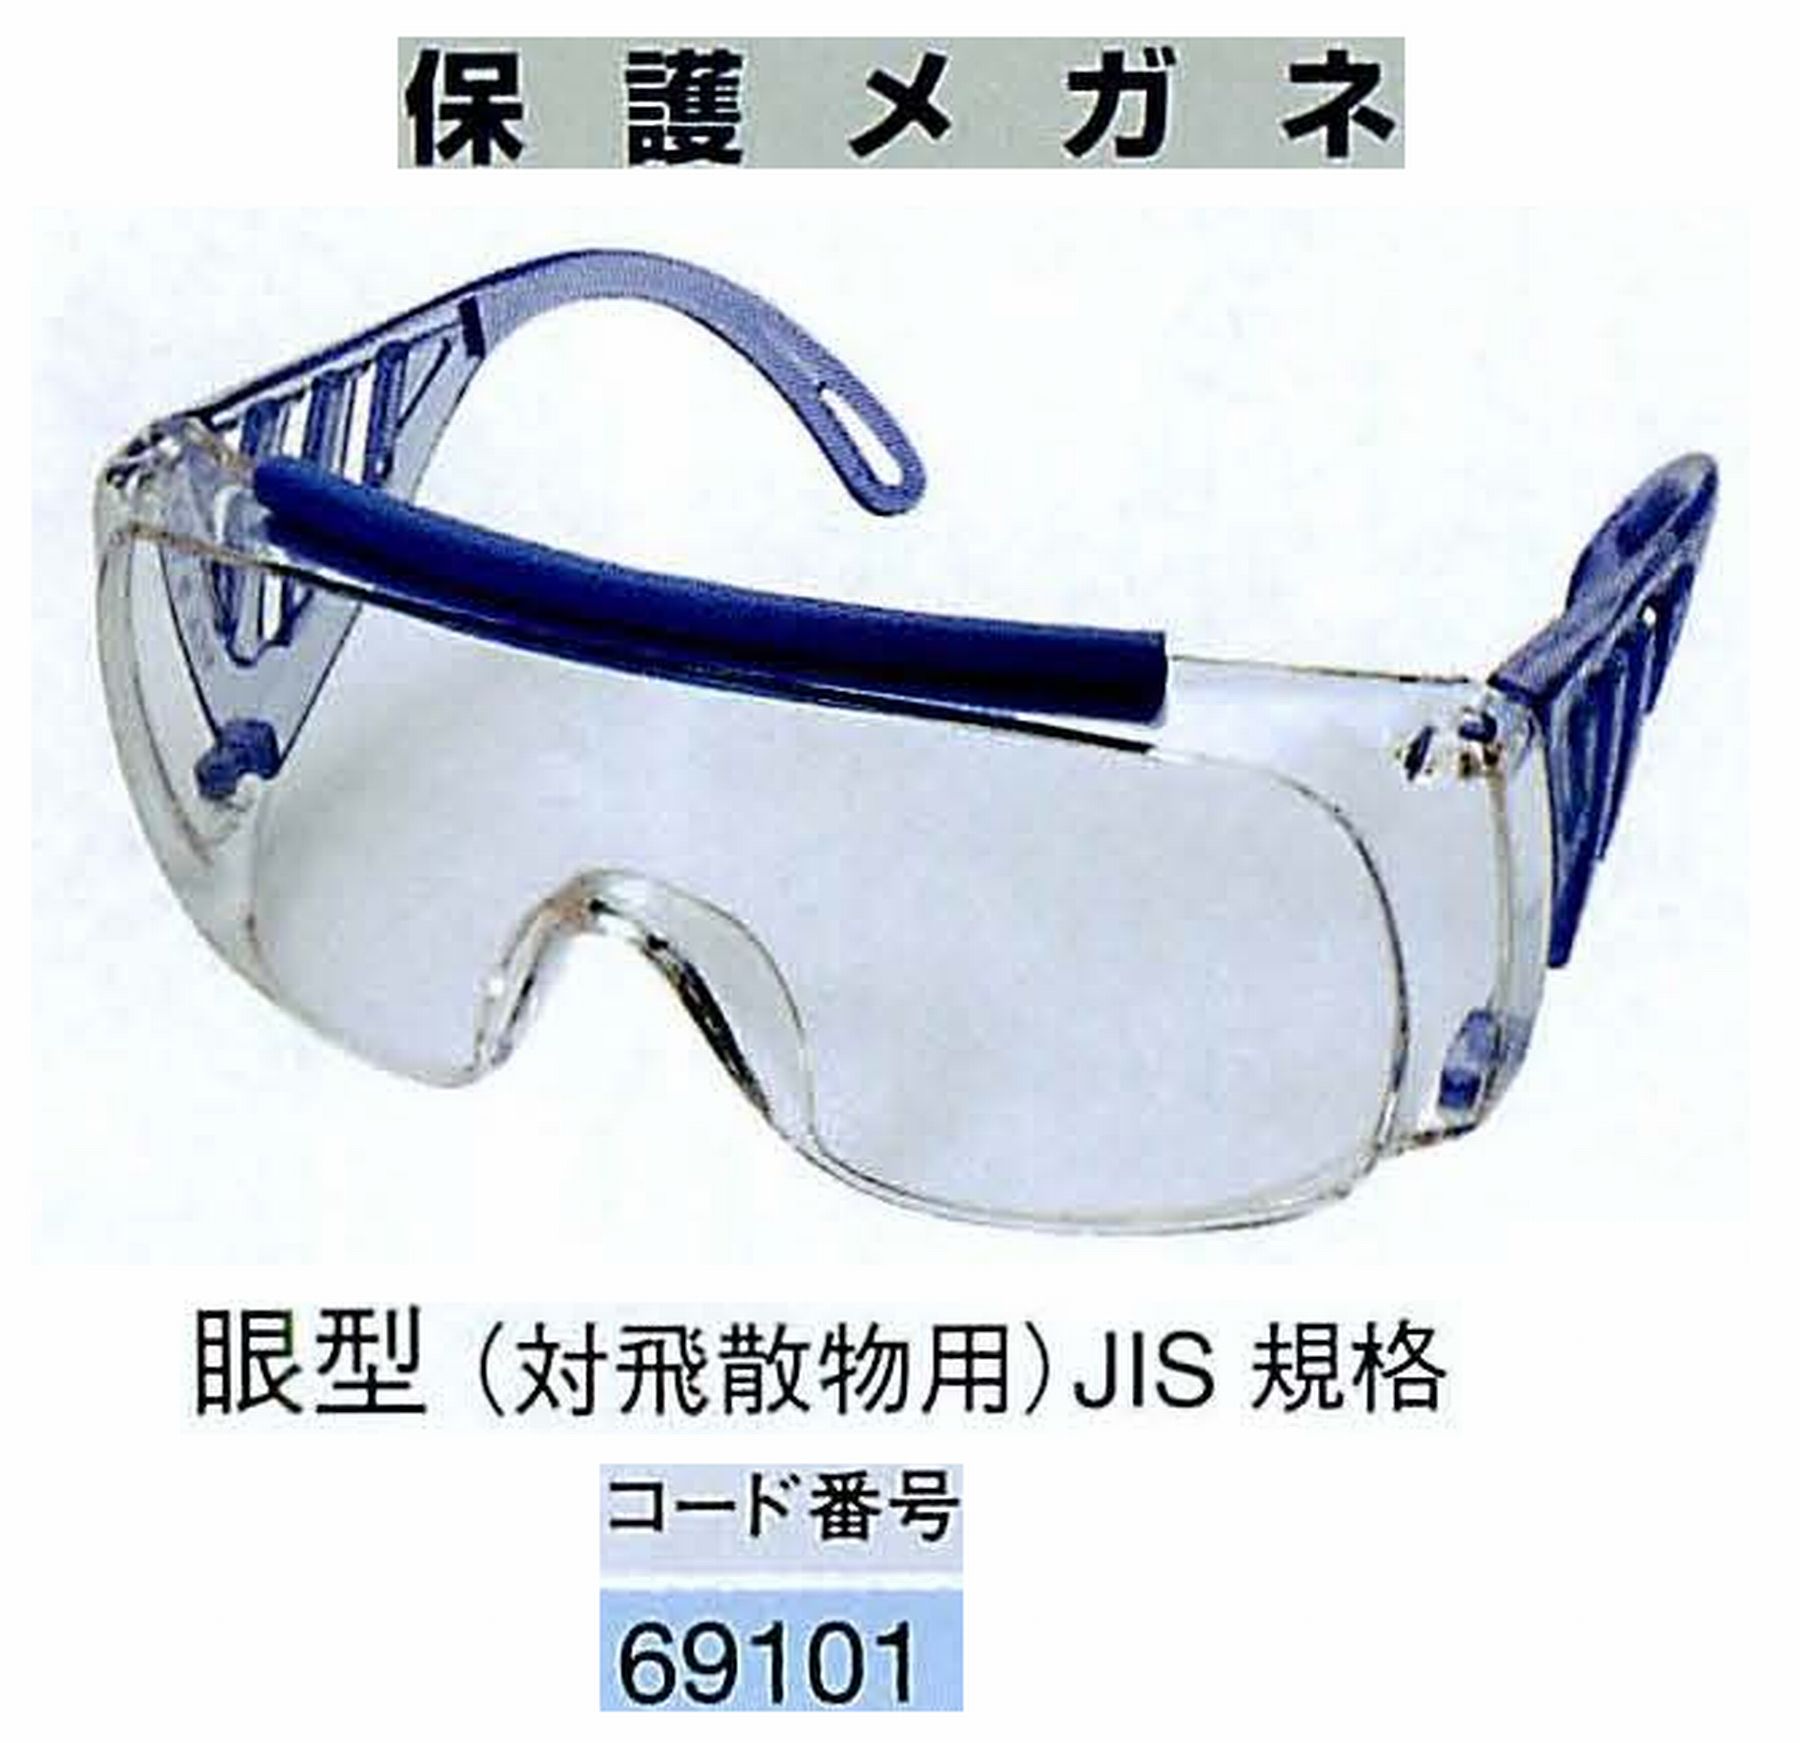 ナカニシ/NAKANISHI 防護用品 保護メガネ 眼型 69101